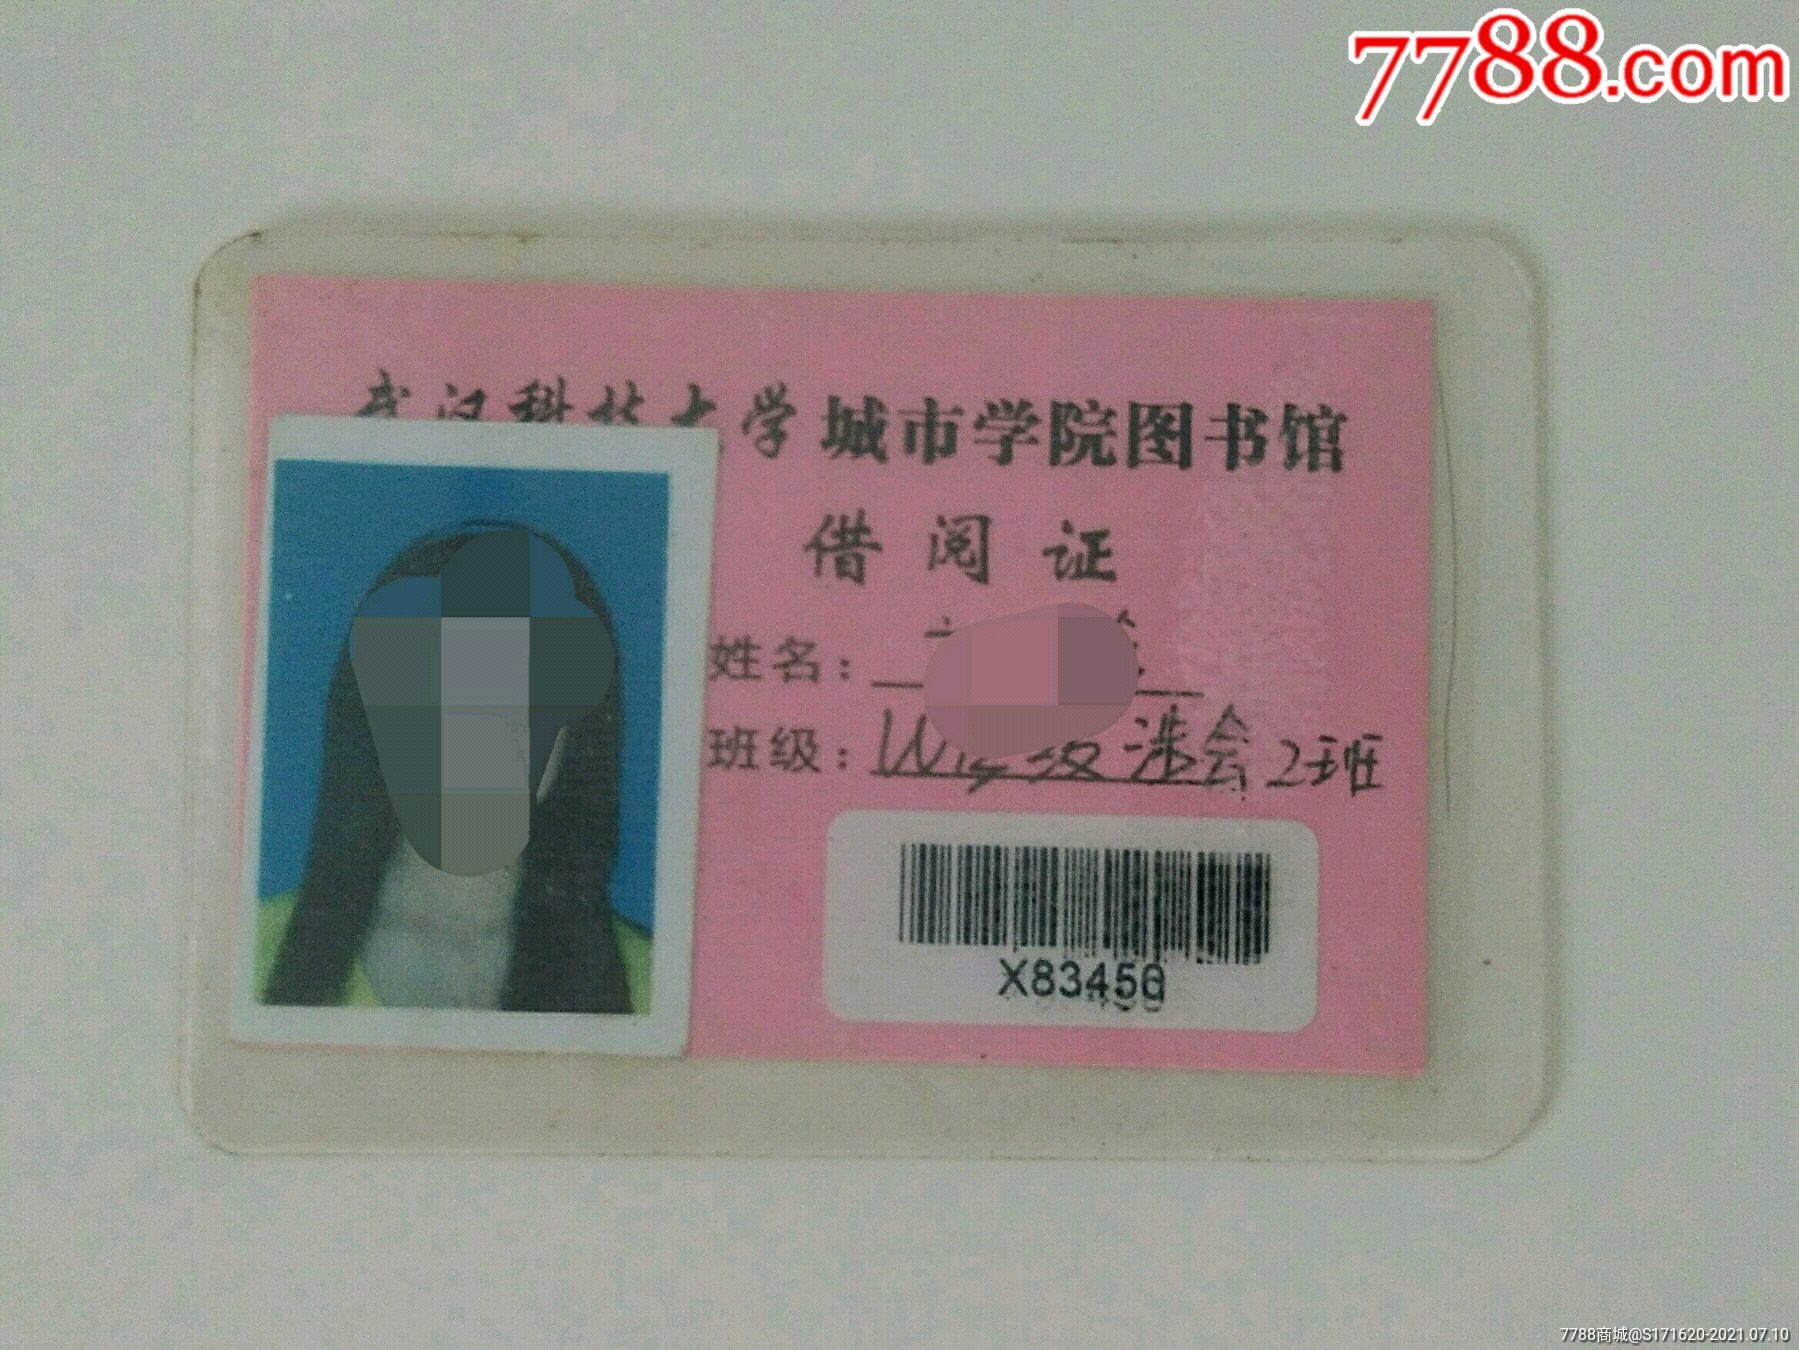 武汉科技大学图书馆借阅证卡